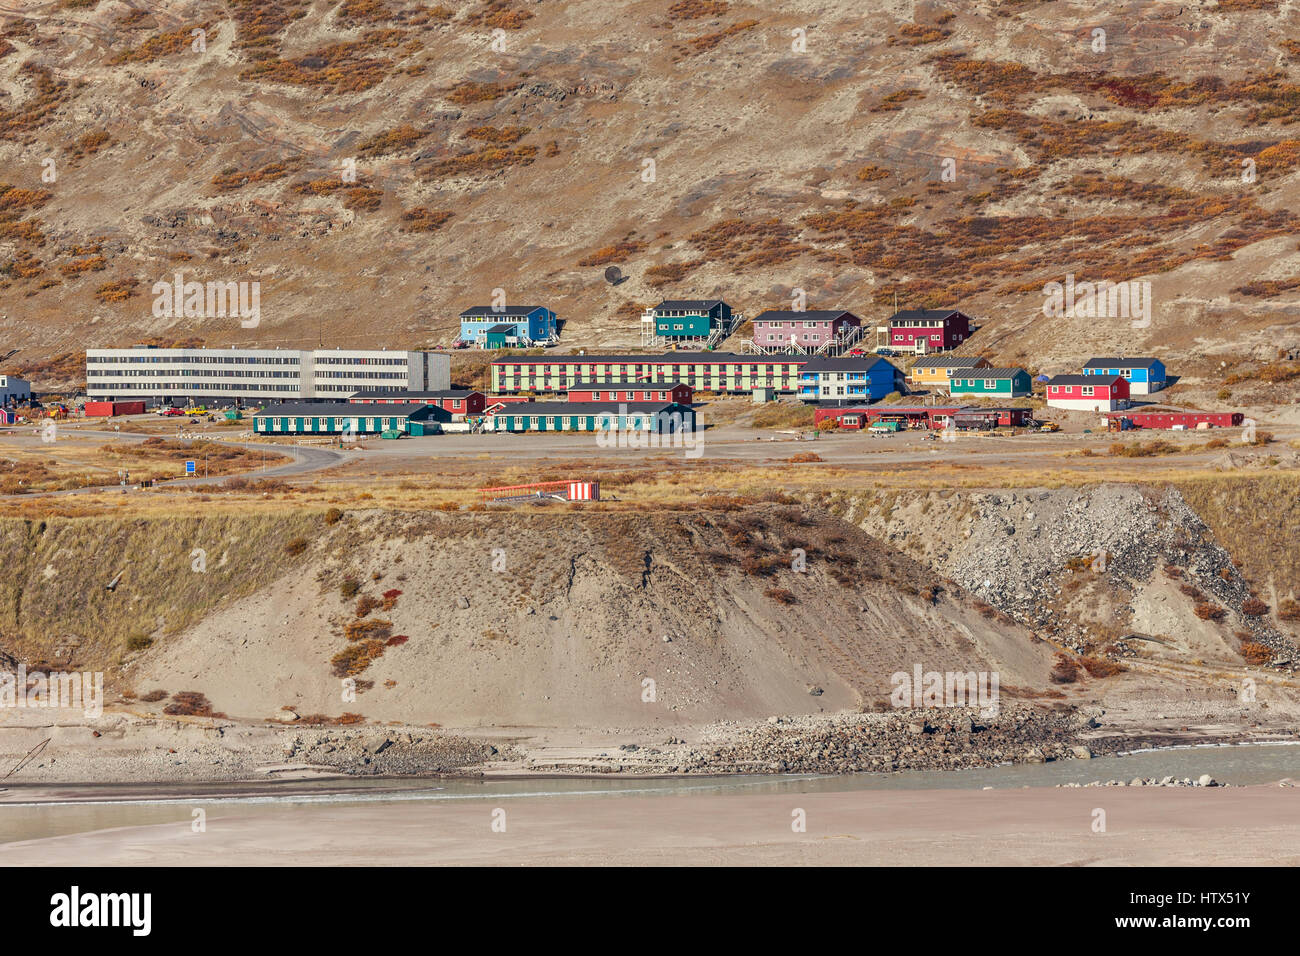 Living houses on the hill, Kangerlussuaq settlement, Greenland Stock Photo